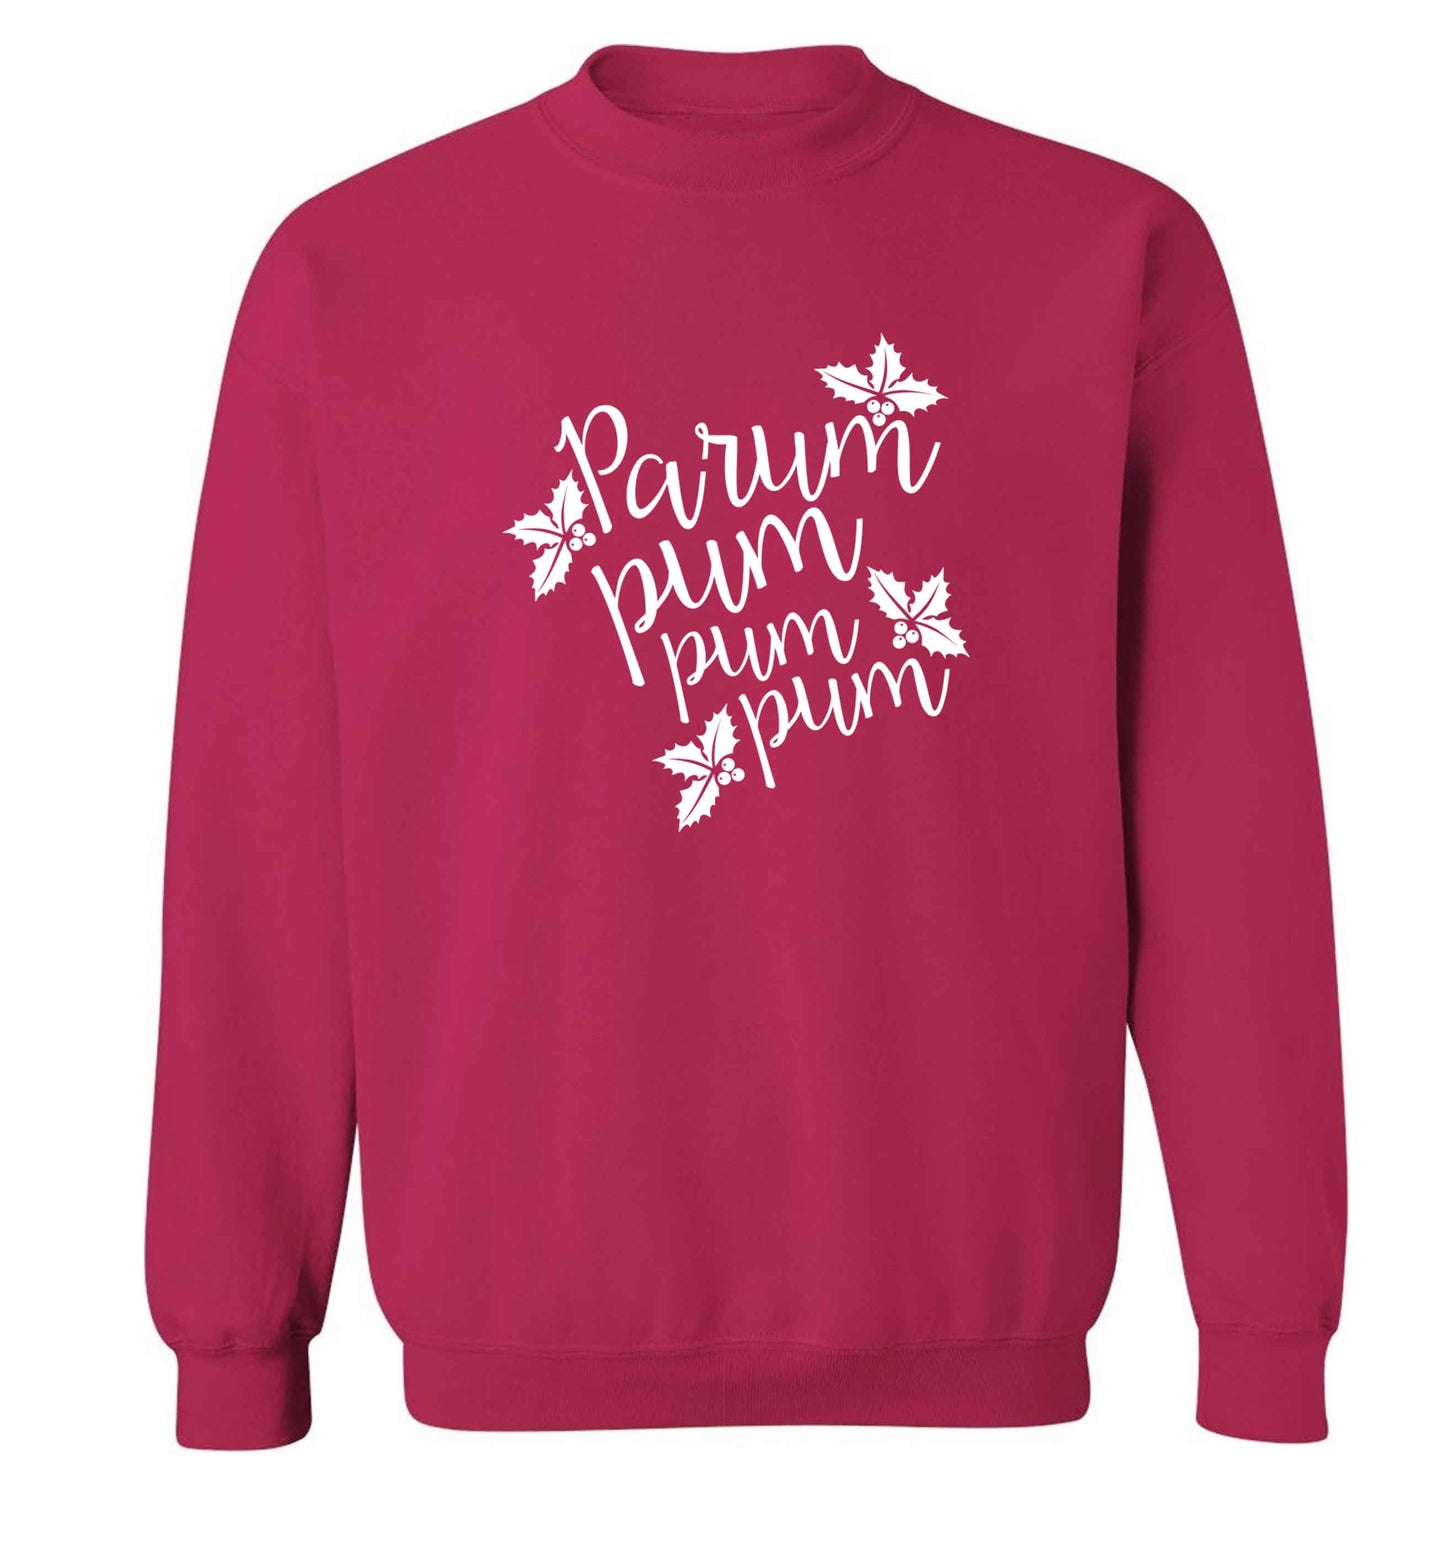 Pa rum pum pum pum adult's unisex pink sweater 2XL